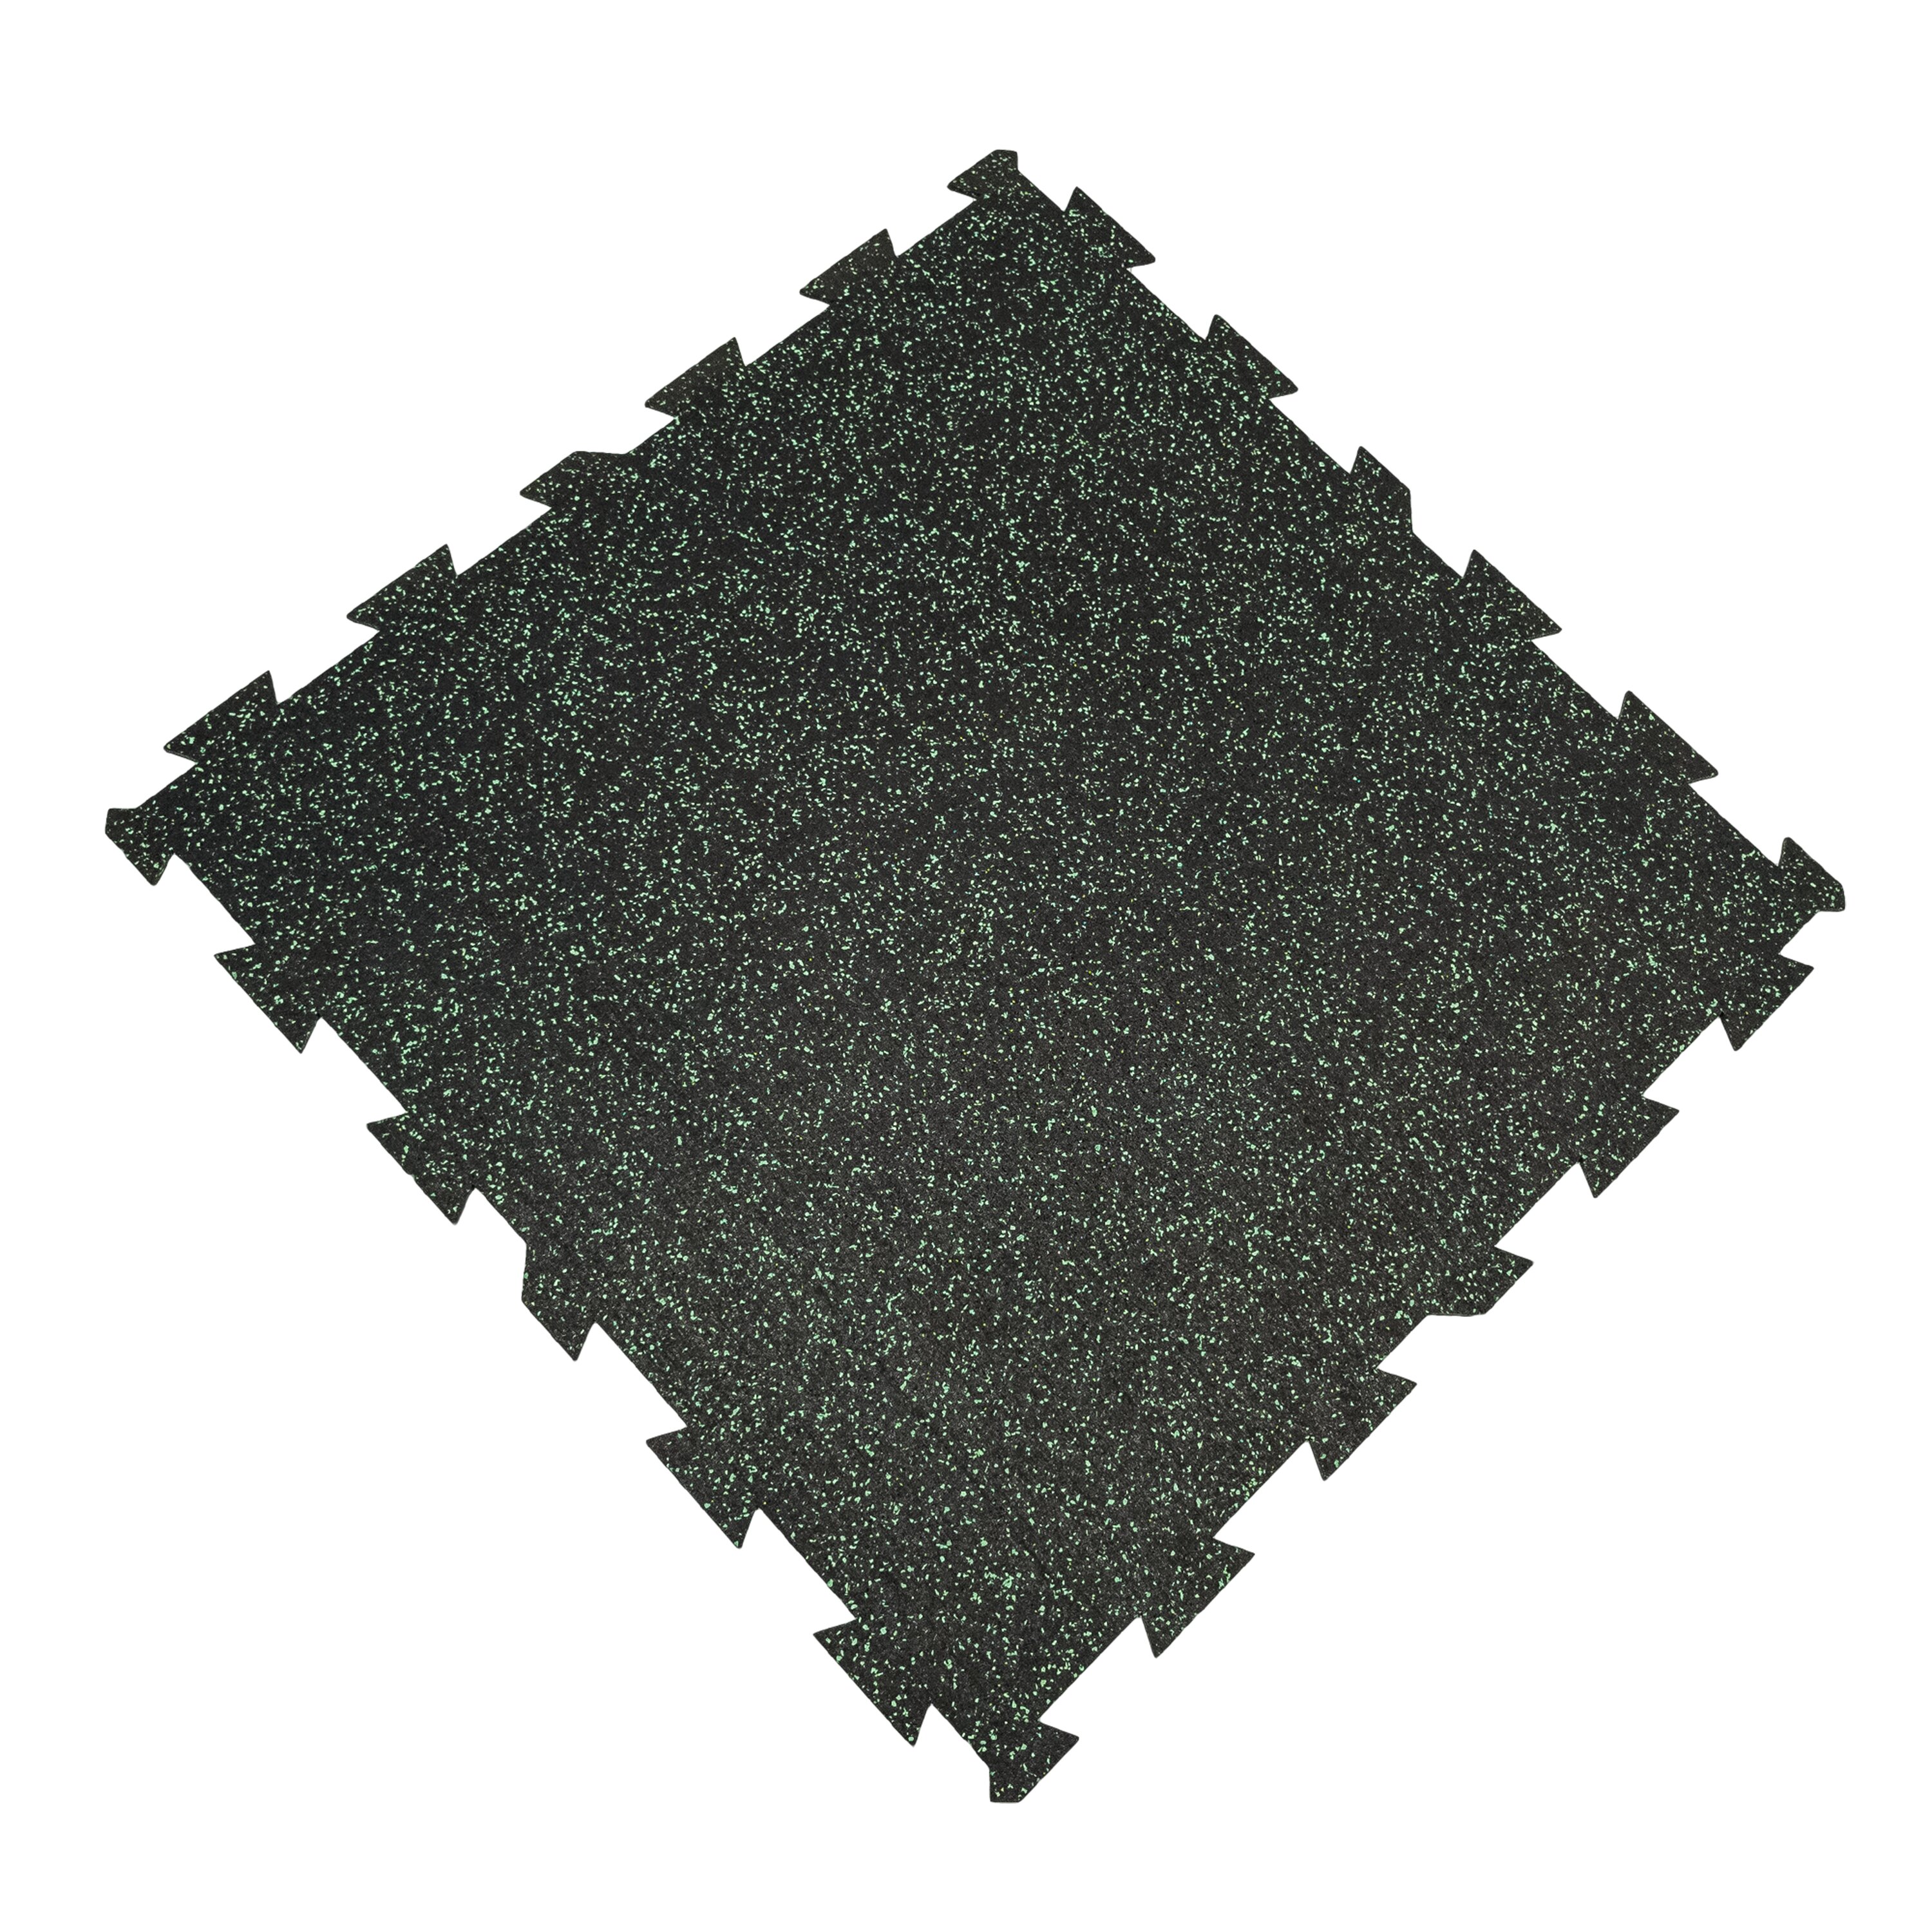 Černo-zelená podlahová guma (puzzle - střed) FLOMA FitFlo SF1050 - délka 100 cm, šířka 100 cm, výška 0,8 cm